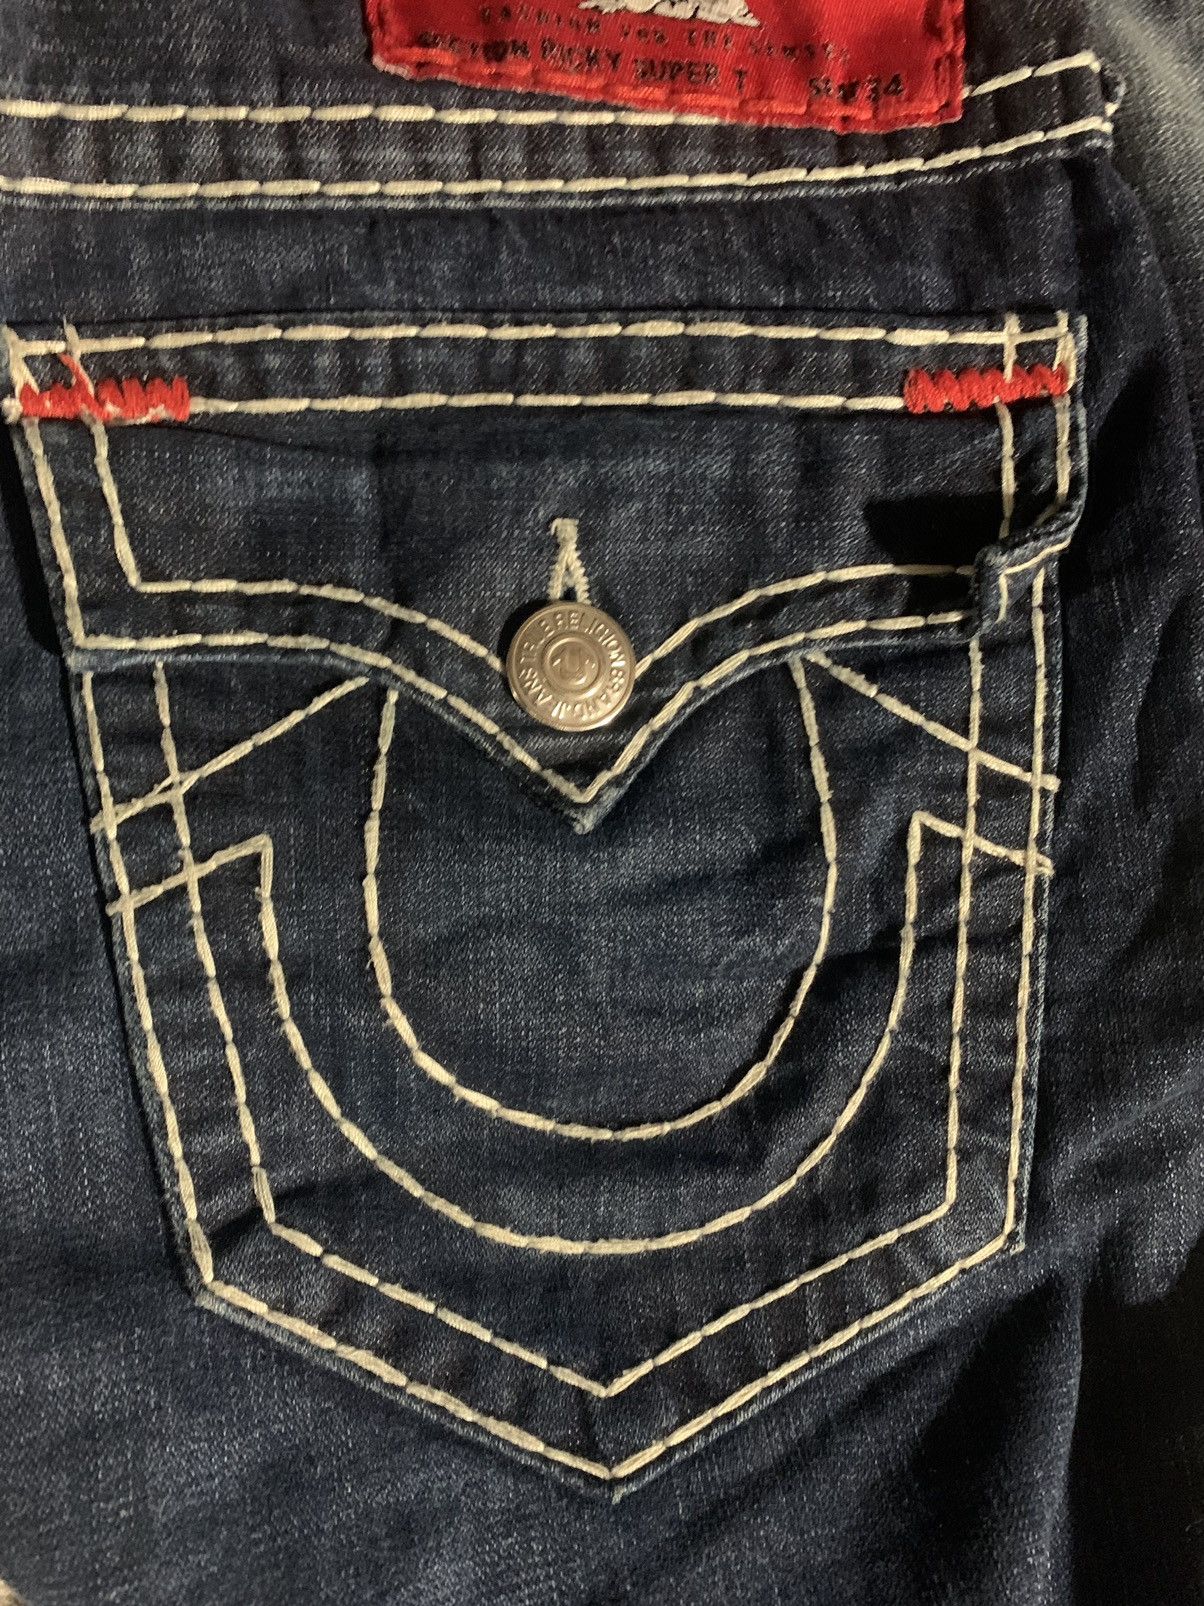 True Religion True Religion super T jeans | Grailed